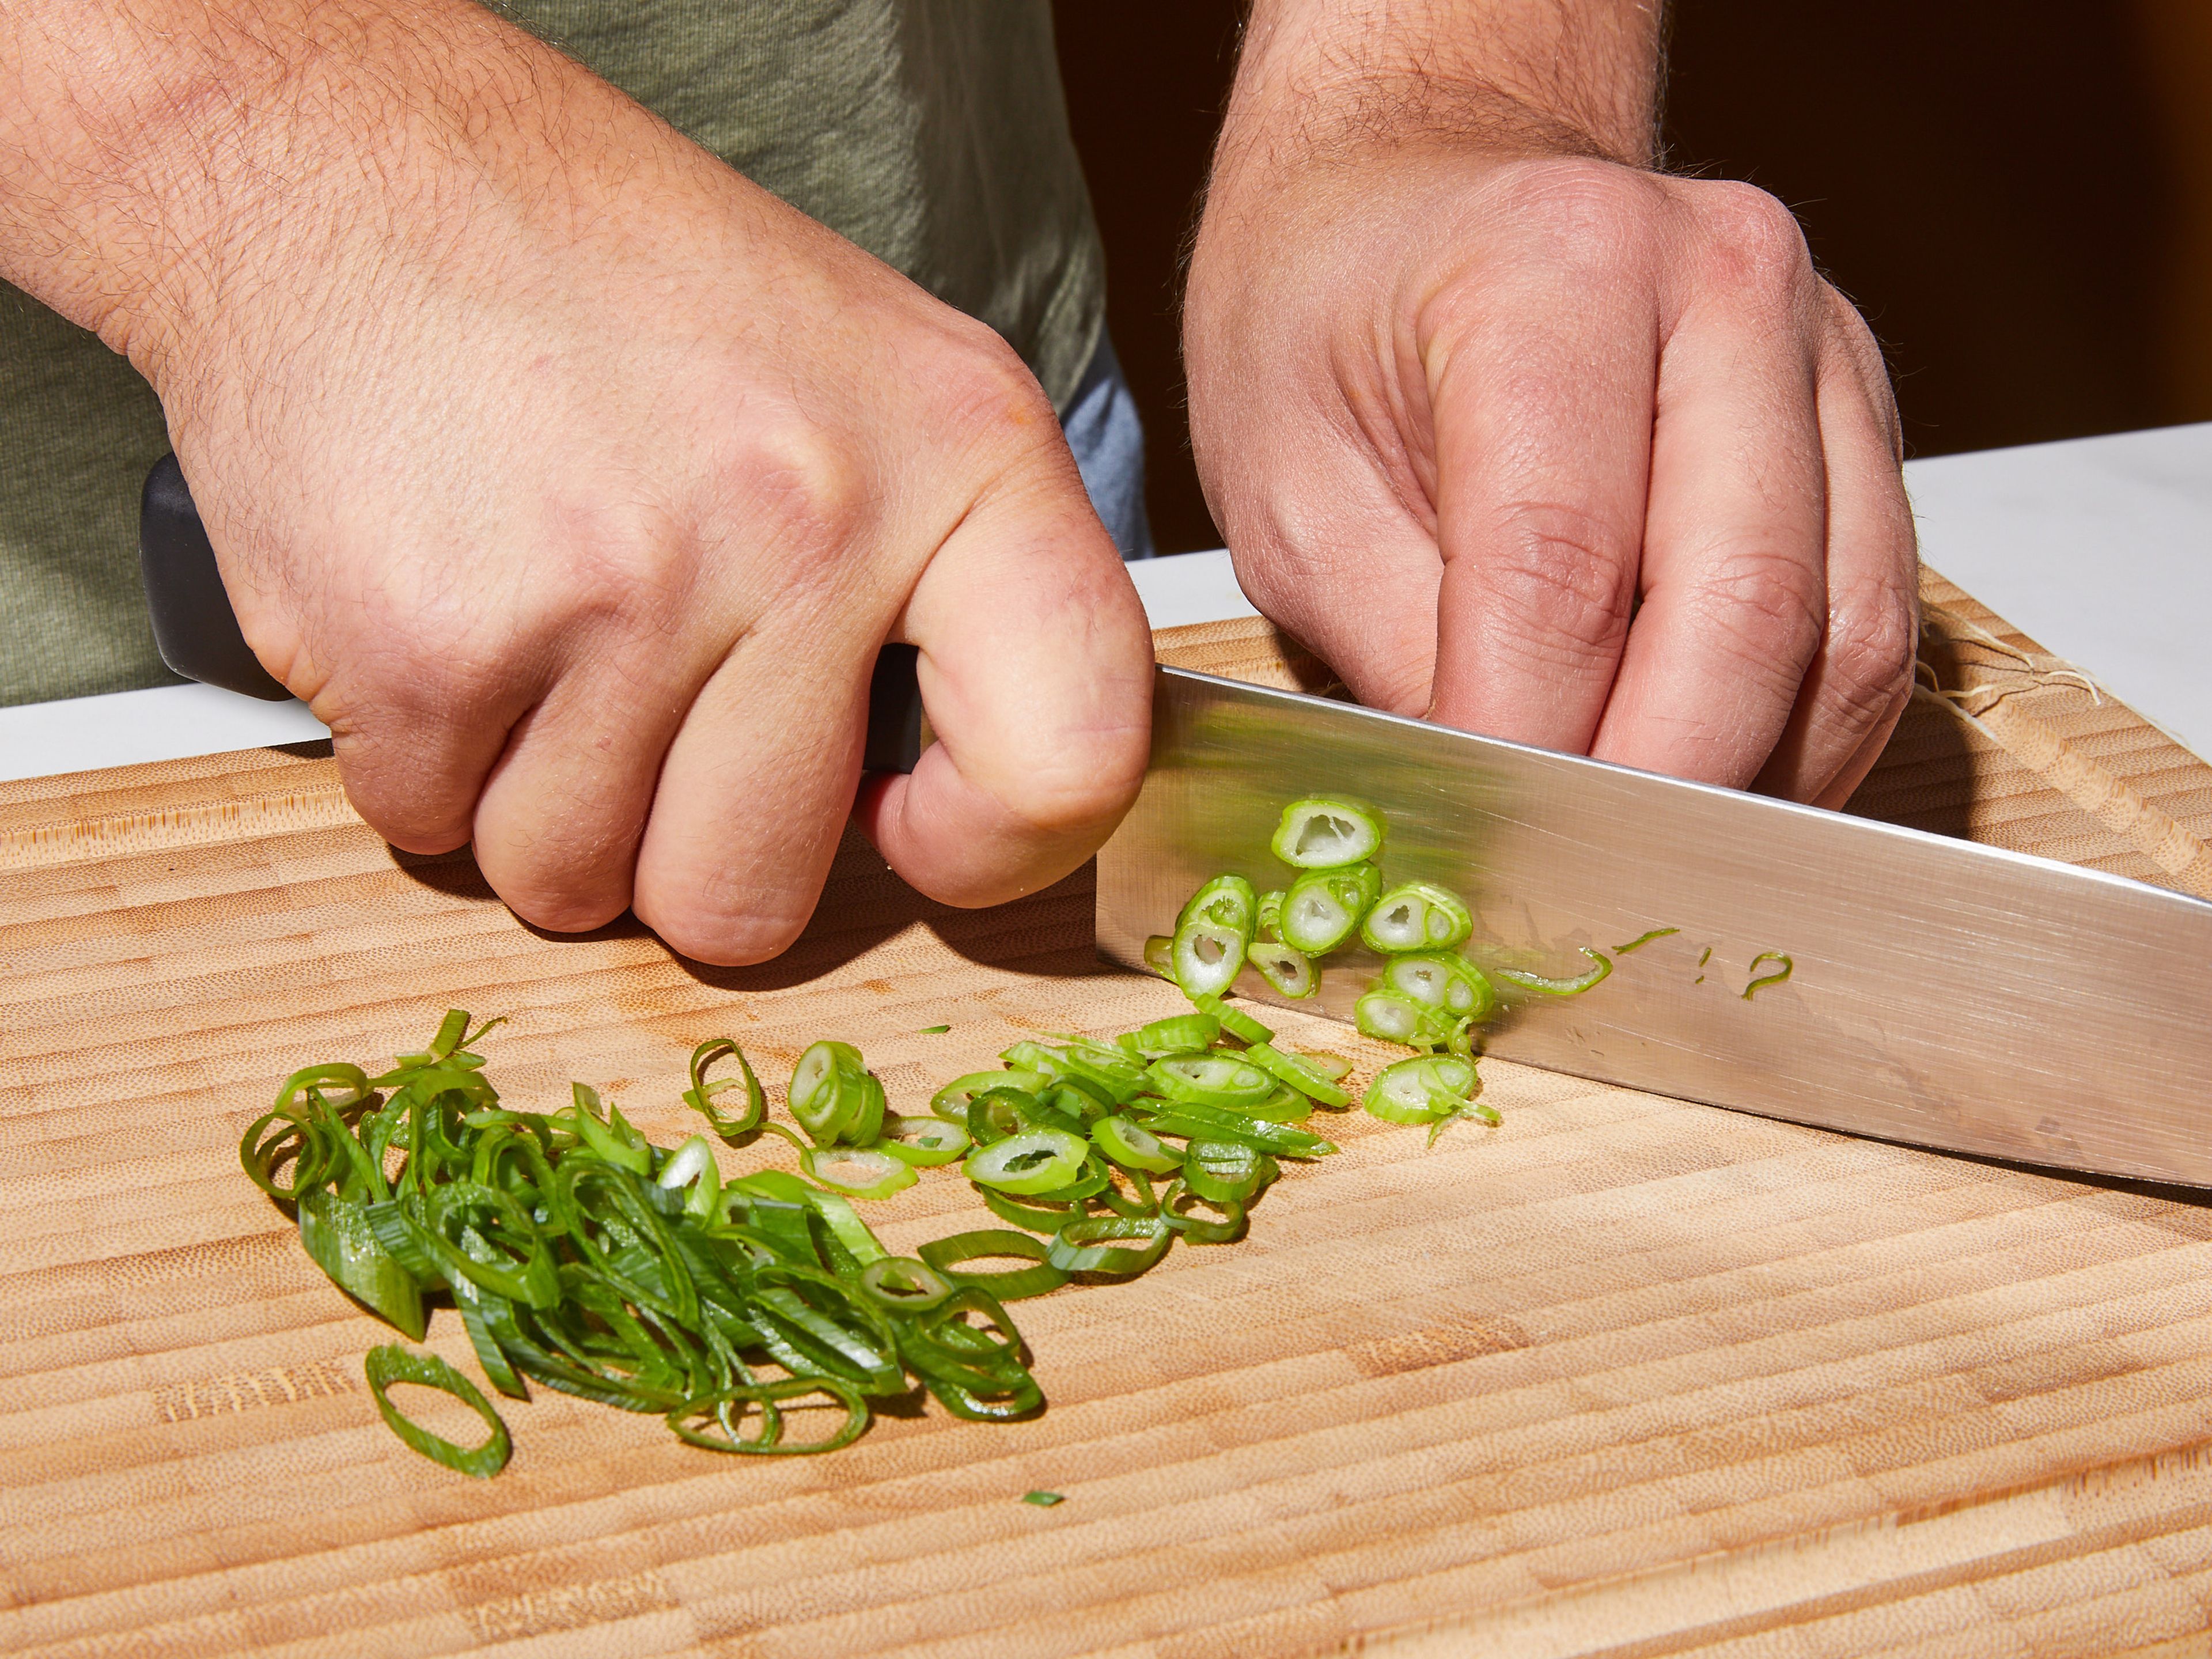 Zwiebel in feine Scheiben schneiden. Knoblauch und Ingwer hacken. Kimchi in breite Streifen schneiden, falls ganze Blätter verwendet werden. Frühlingszwiebeln zum Servieren in feine Scheiben schneiden.